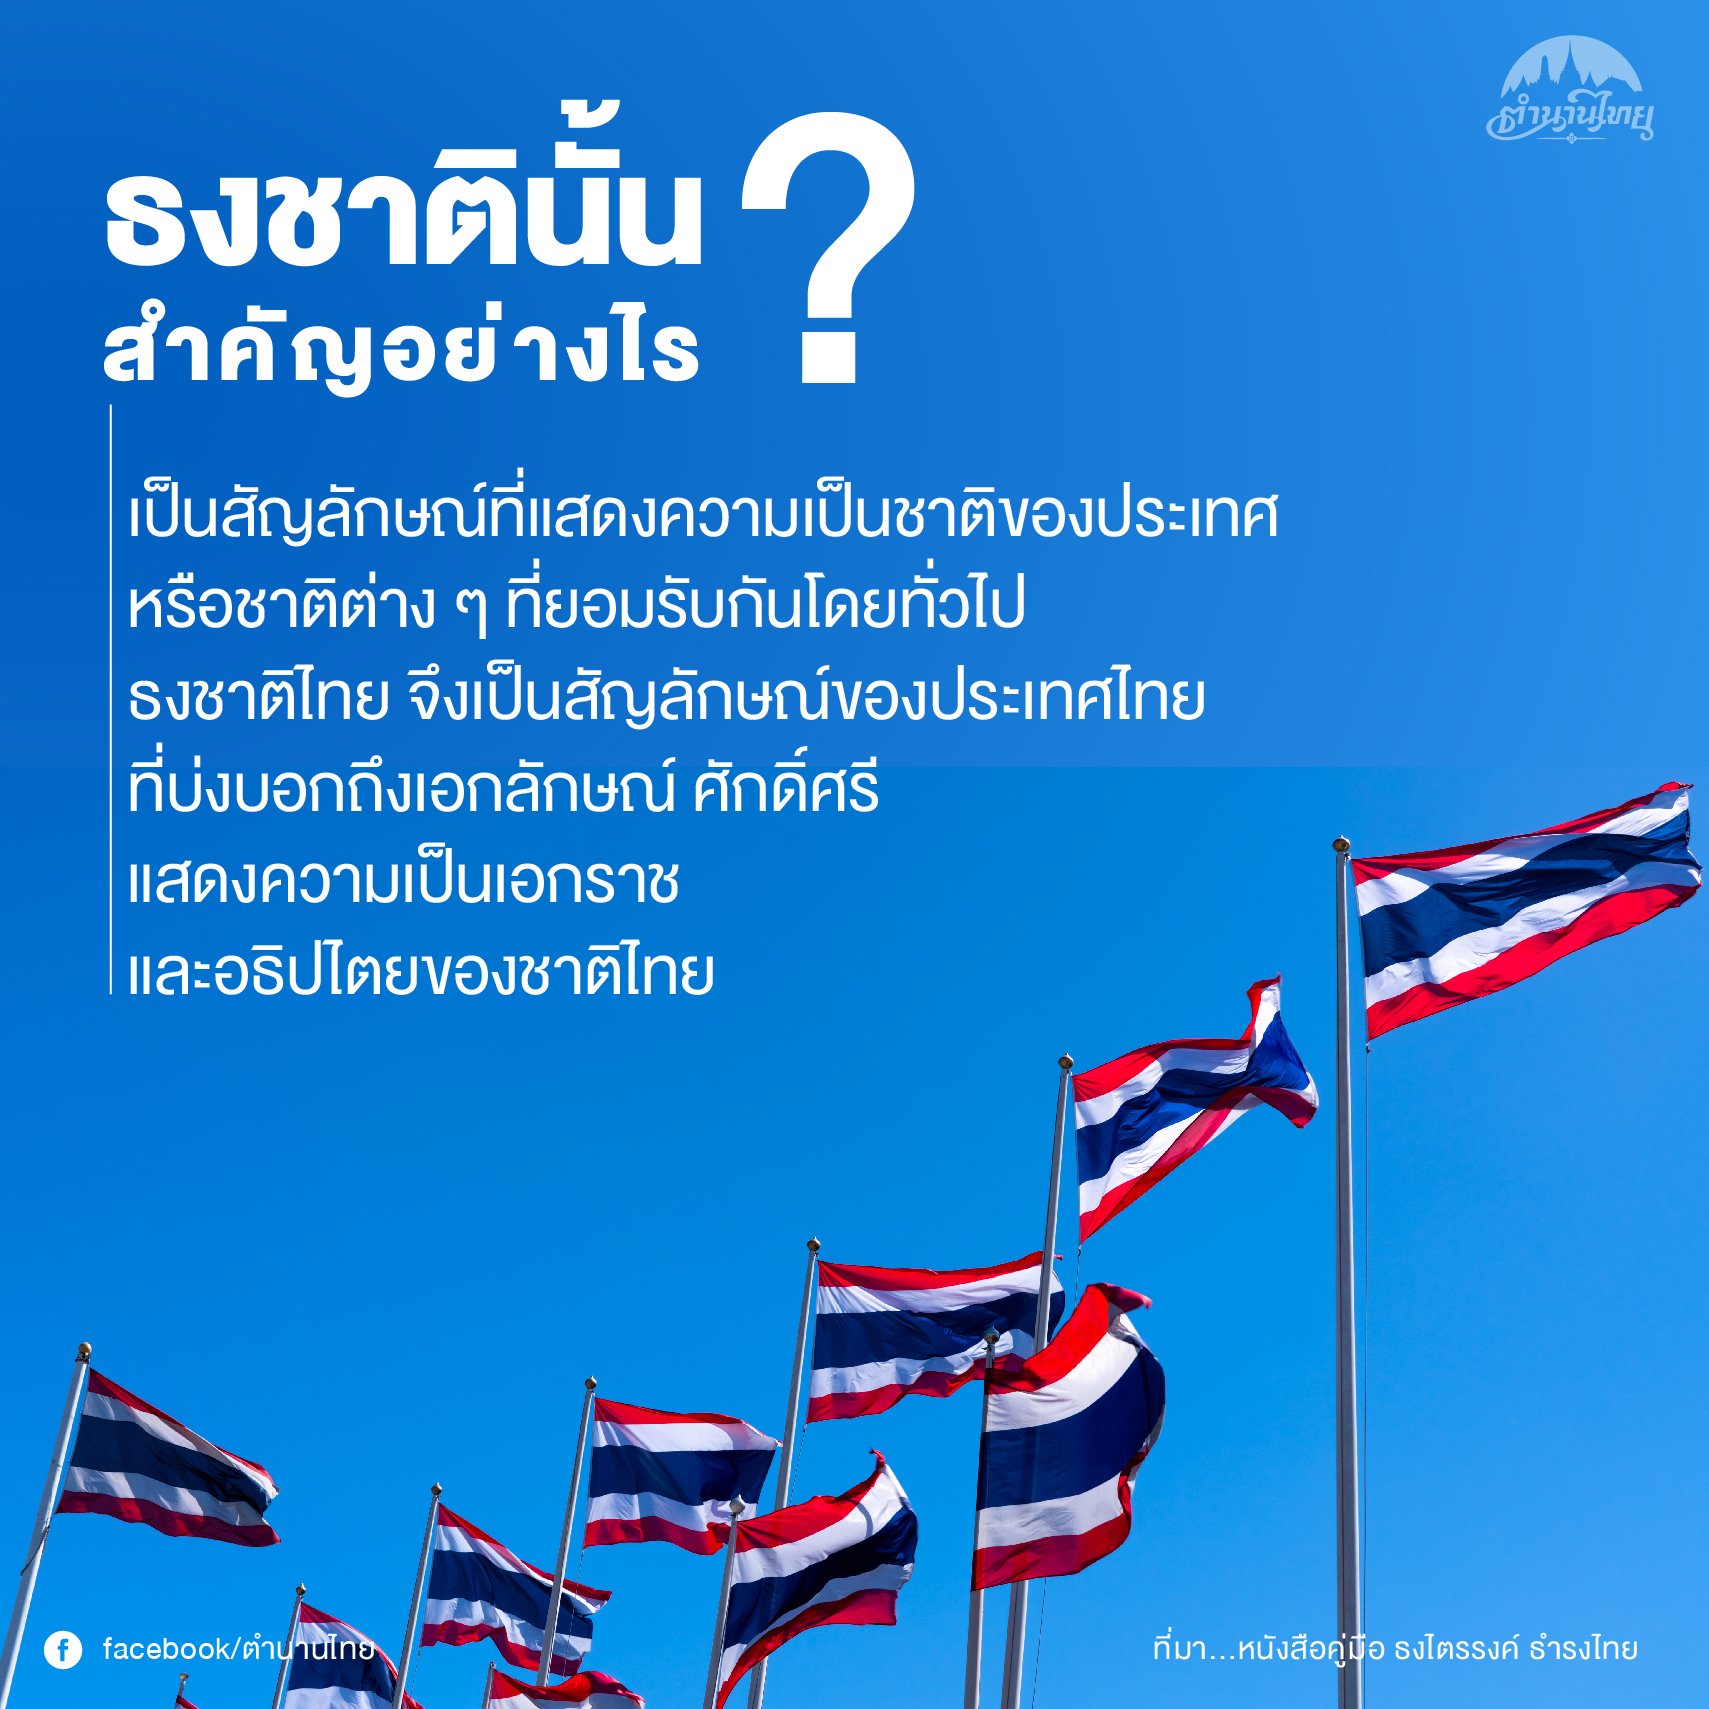 วิวัฒนาการของธงชาติไทยจากอดีตถึงปัจจุบัน